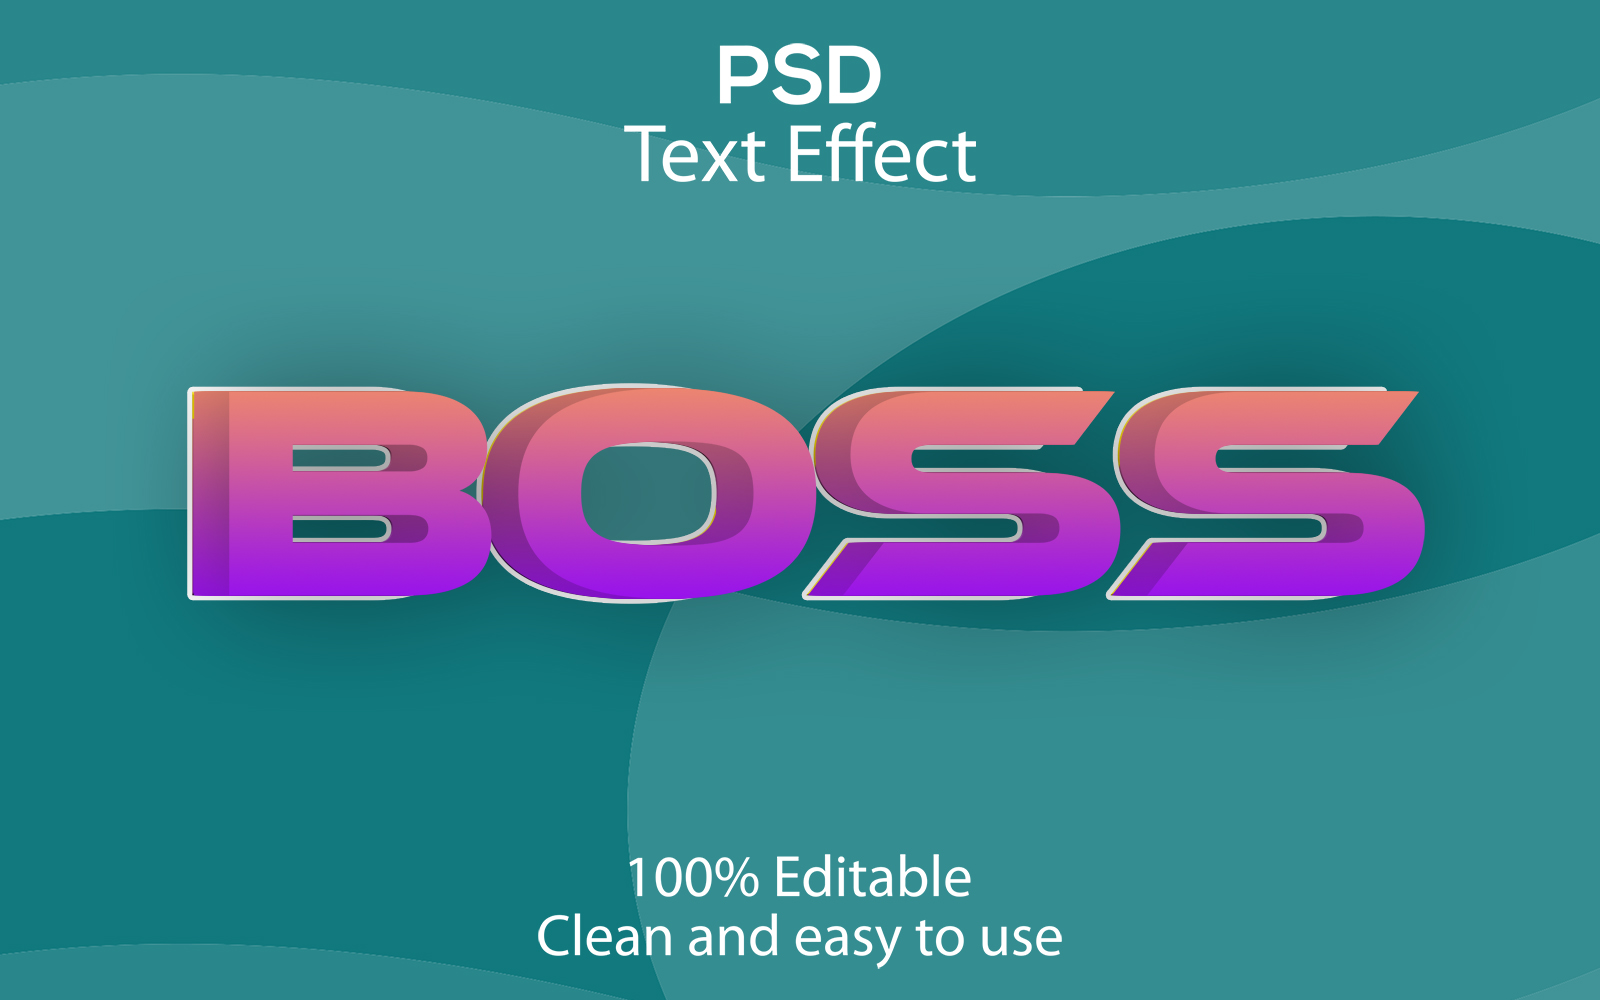 Boss | 3D Boss | Boss Editable Psd Text Effect | Modern Boss Psd Text Effect